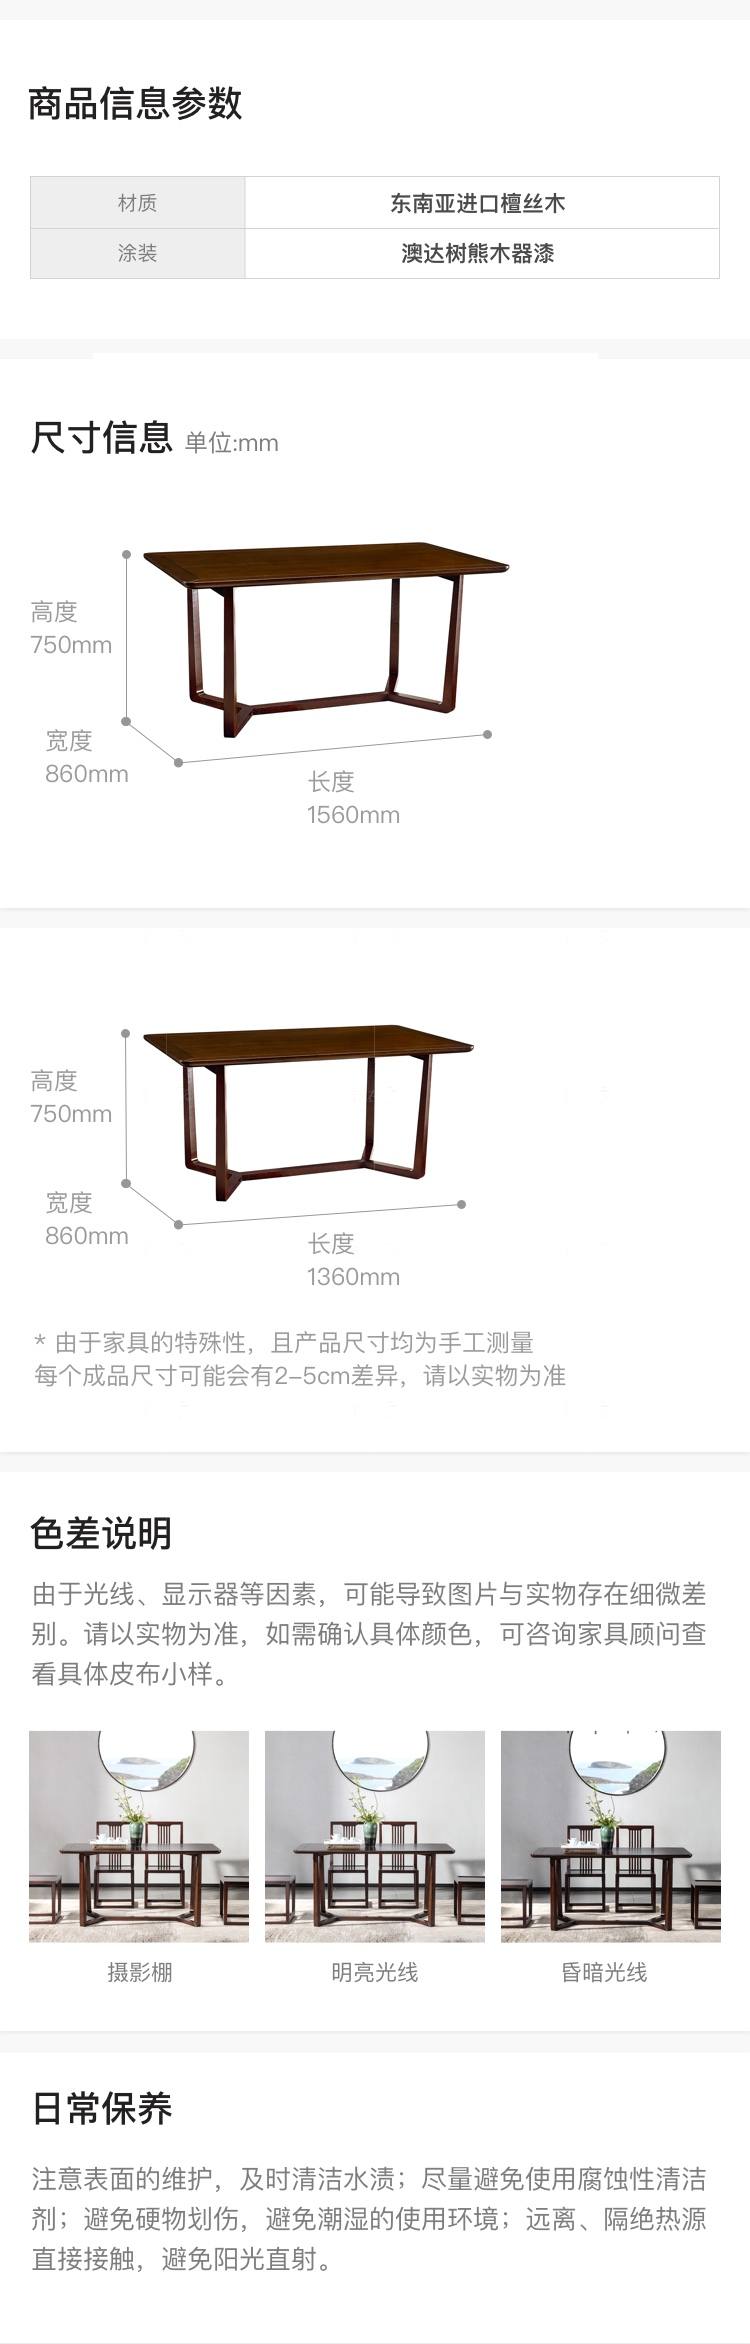 新中式风格秋月餐桌的家具详细介绍